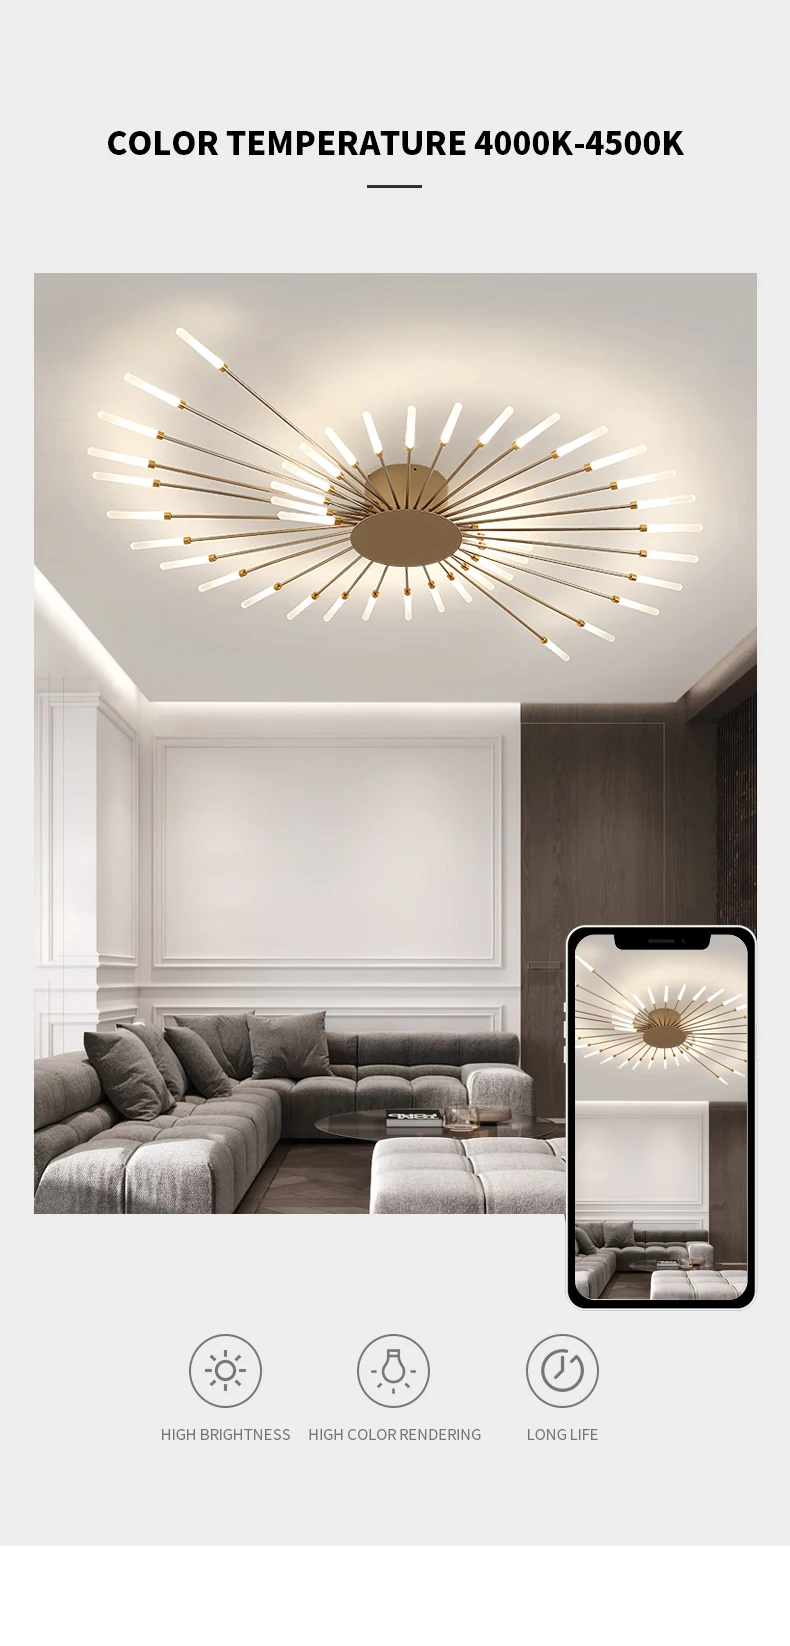 H87b87581962d47b494922b8a349a8153Q Hot sale fireworks led Chandelier For Living Room Bedroom Home chandelier Modern Led Ceiling Chandelier Lamp Lighting chandelier